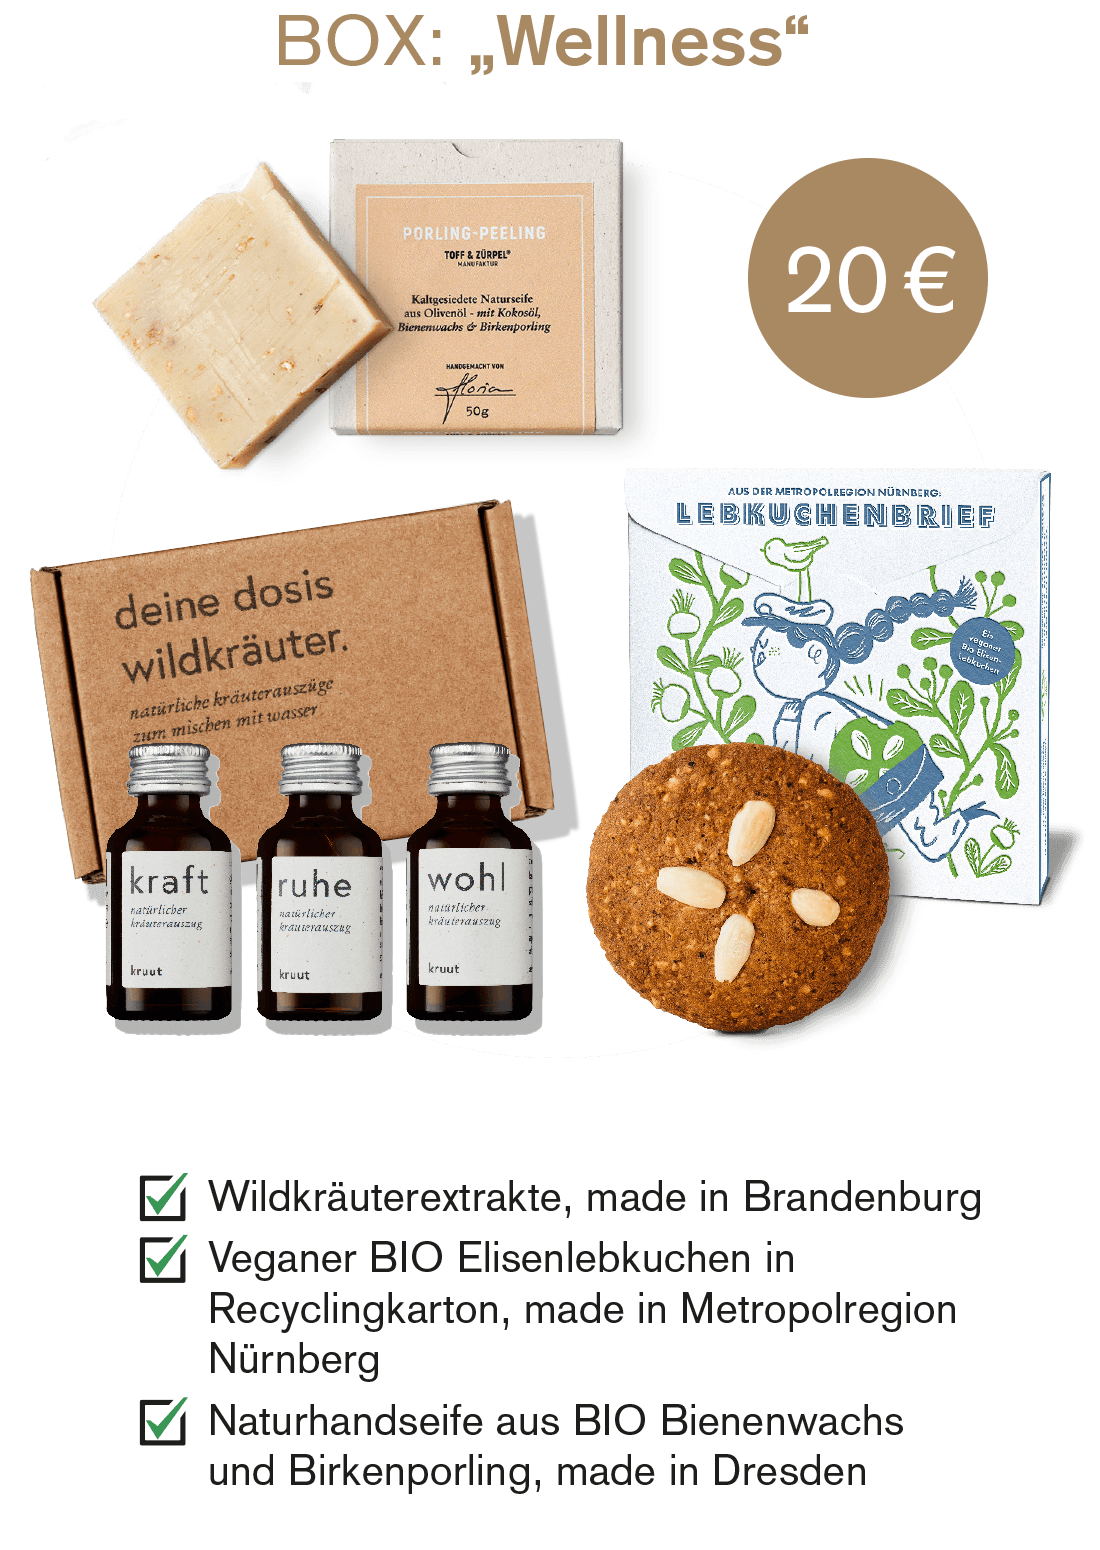 Weihnachts-Geschenkebox "Wellness" für 20 Euro